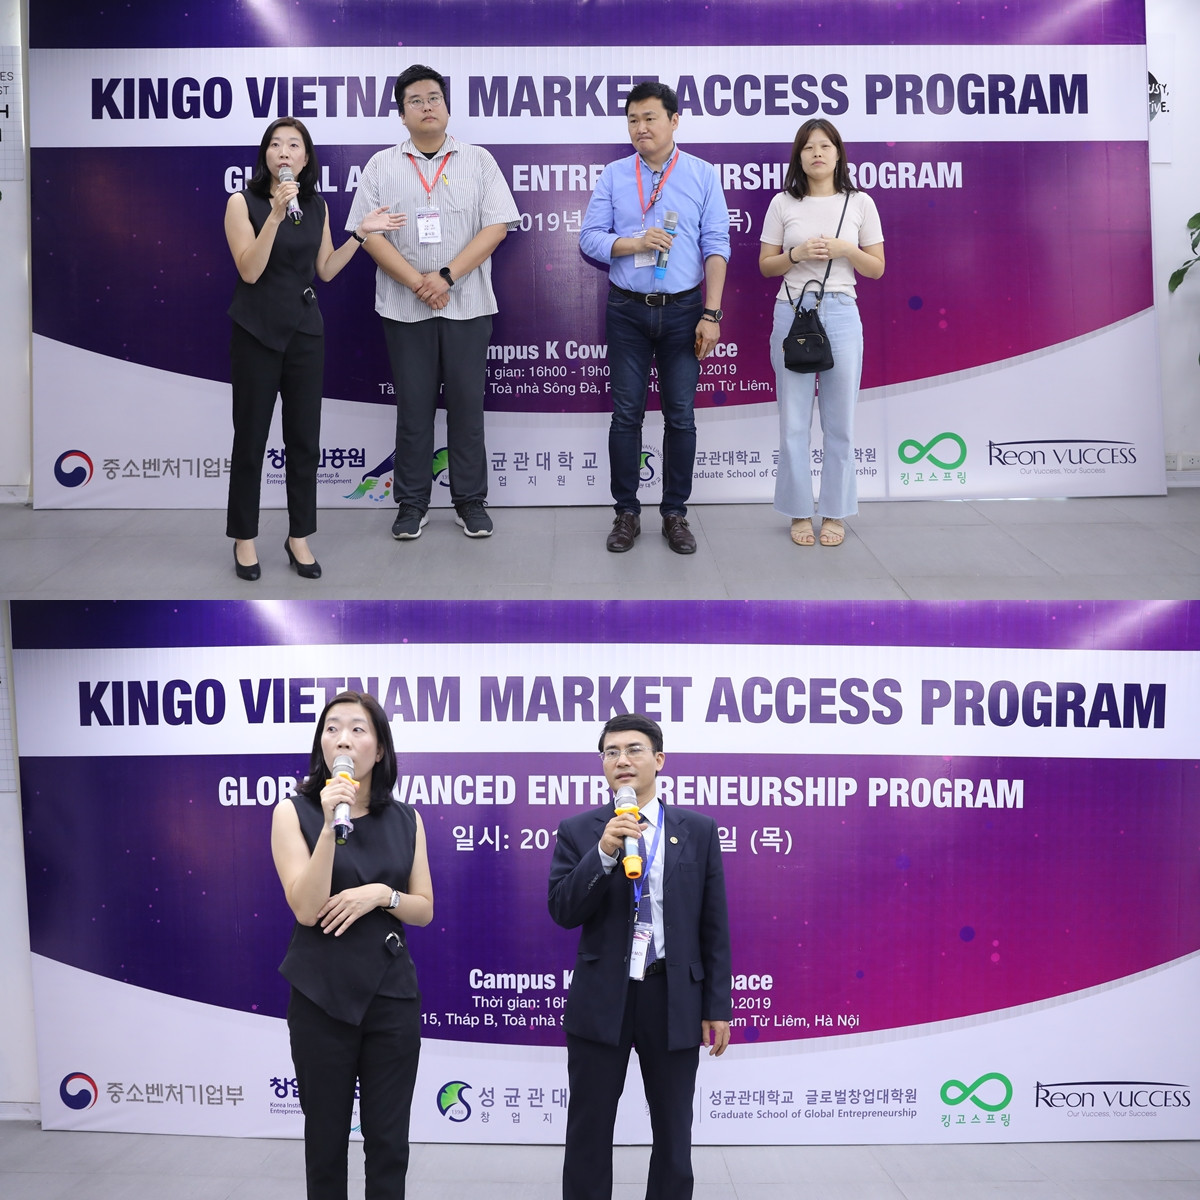 Doanh nghiệp Việt Nam - Hàn Quốc trao đổi hợp tác đa ngành nghề để phát triển theo xu thế toàn cầu hóa